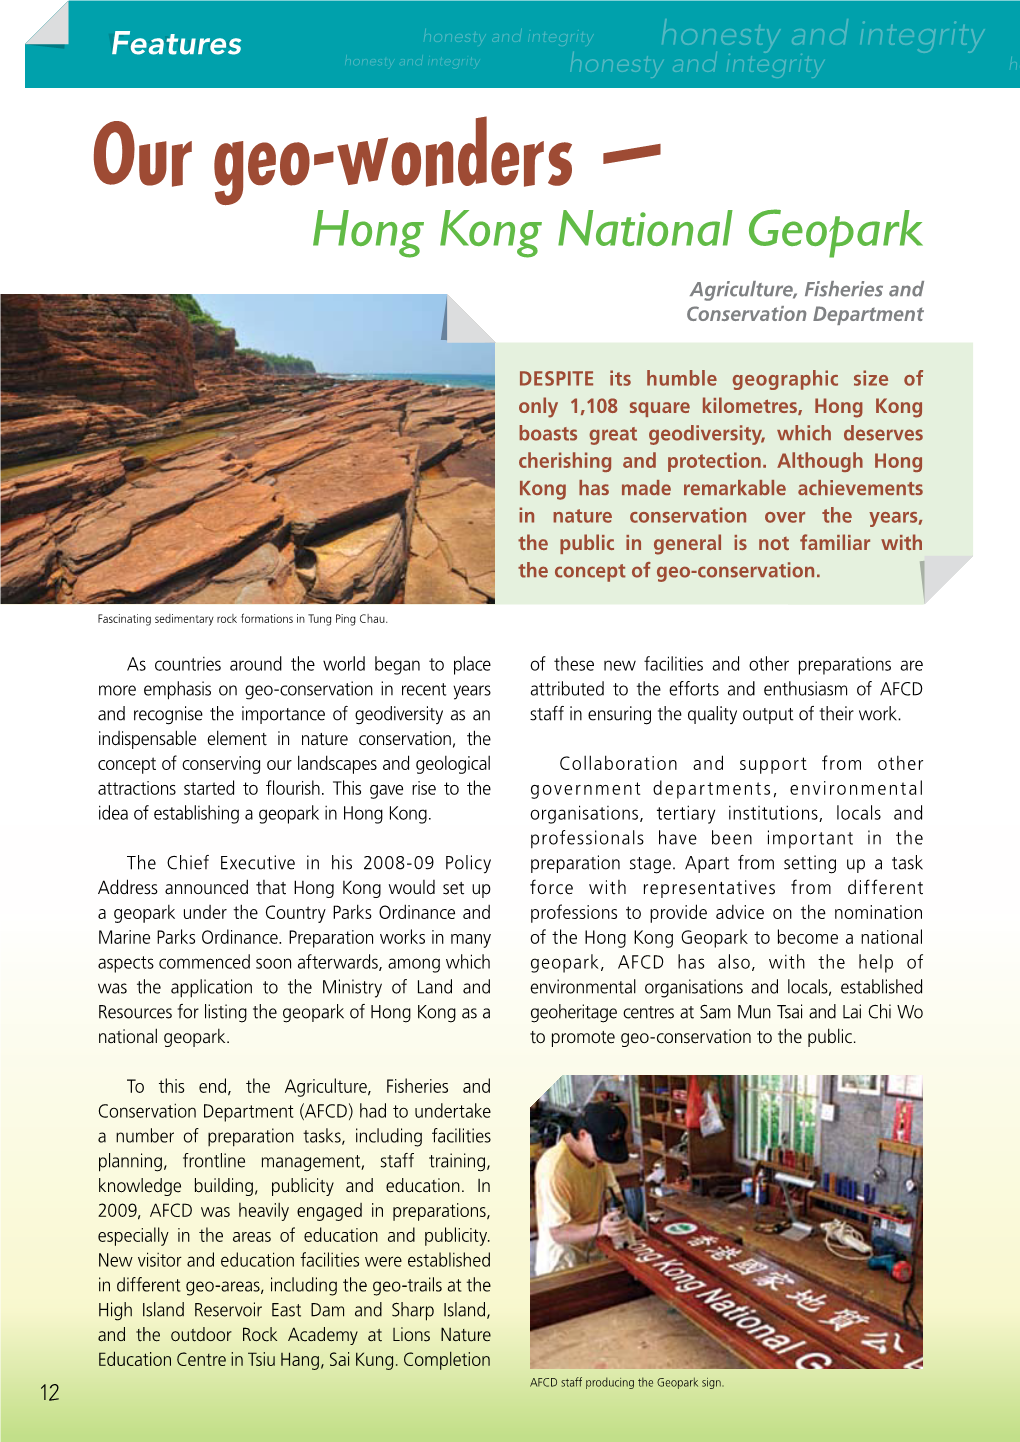 Our Geo-Wonders — Hong Kong National Geopark